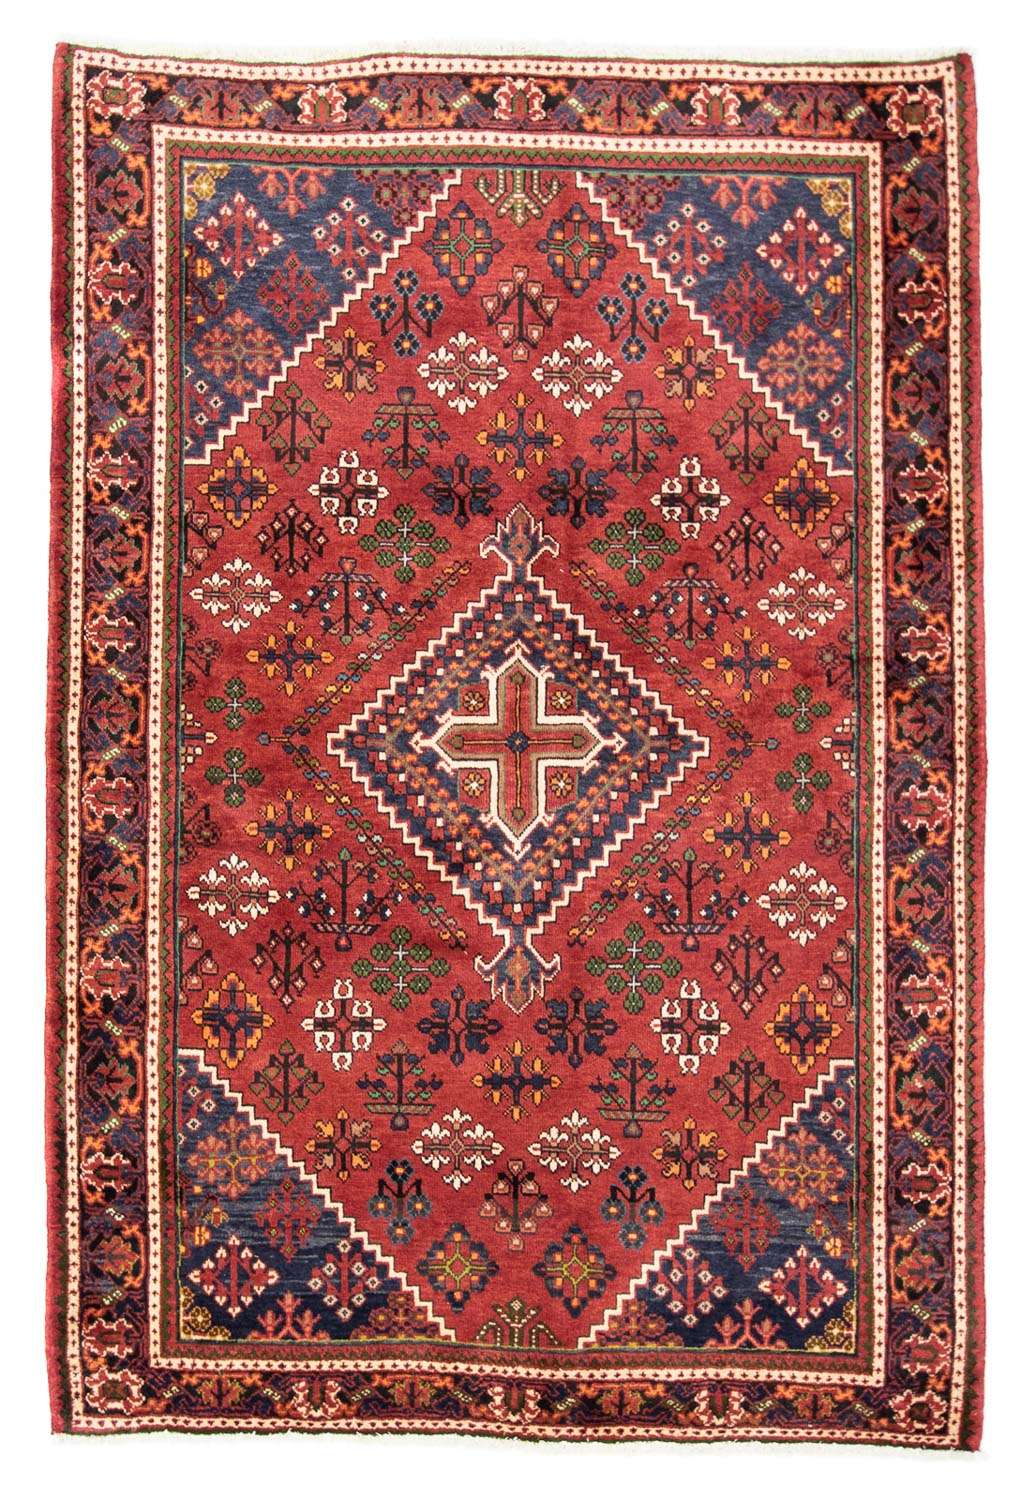 Alfombra persa - Nómada - 205 x 138 cm - rojo oscuro